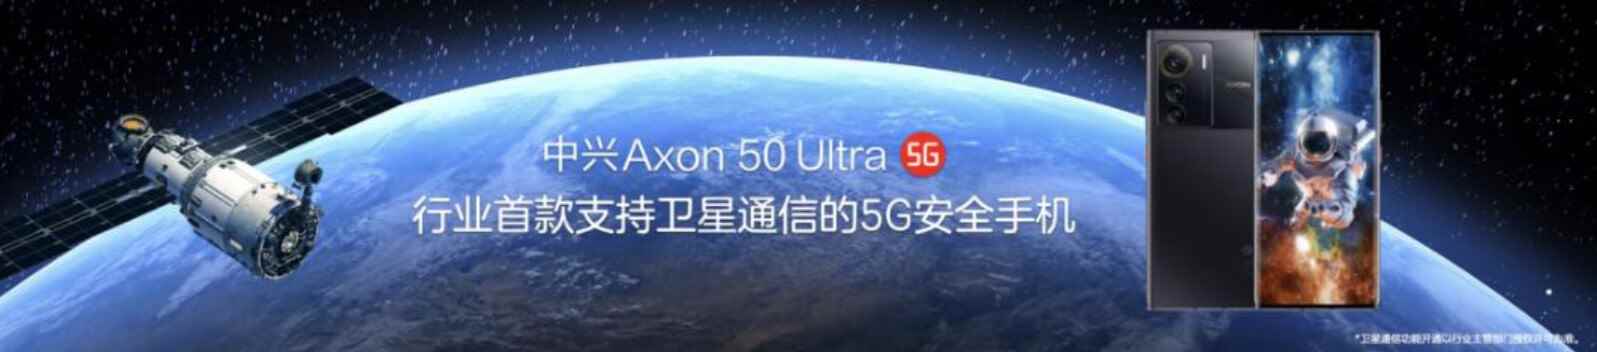 ZTE Axon 50 Ultra, cep telefonu hizmeti olmadığında kullanıcıların uydu üzerinden iki yönlü SMS mesajlaşmasına olanak tanır - ZTE Axon 50 Ultra, uydu mesajlaşması ve güçlü piliyle tanıtıldı